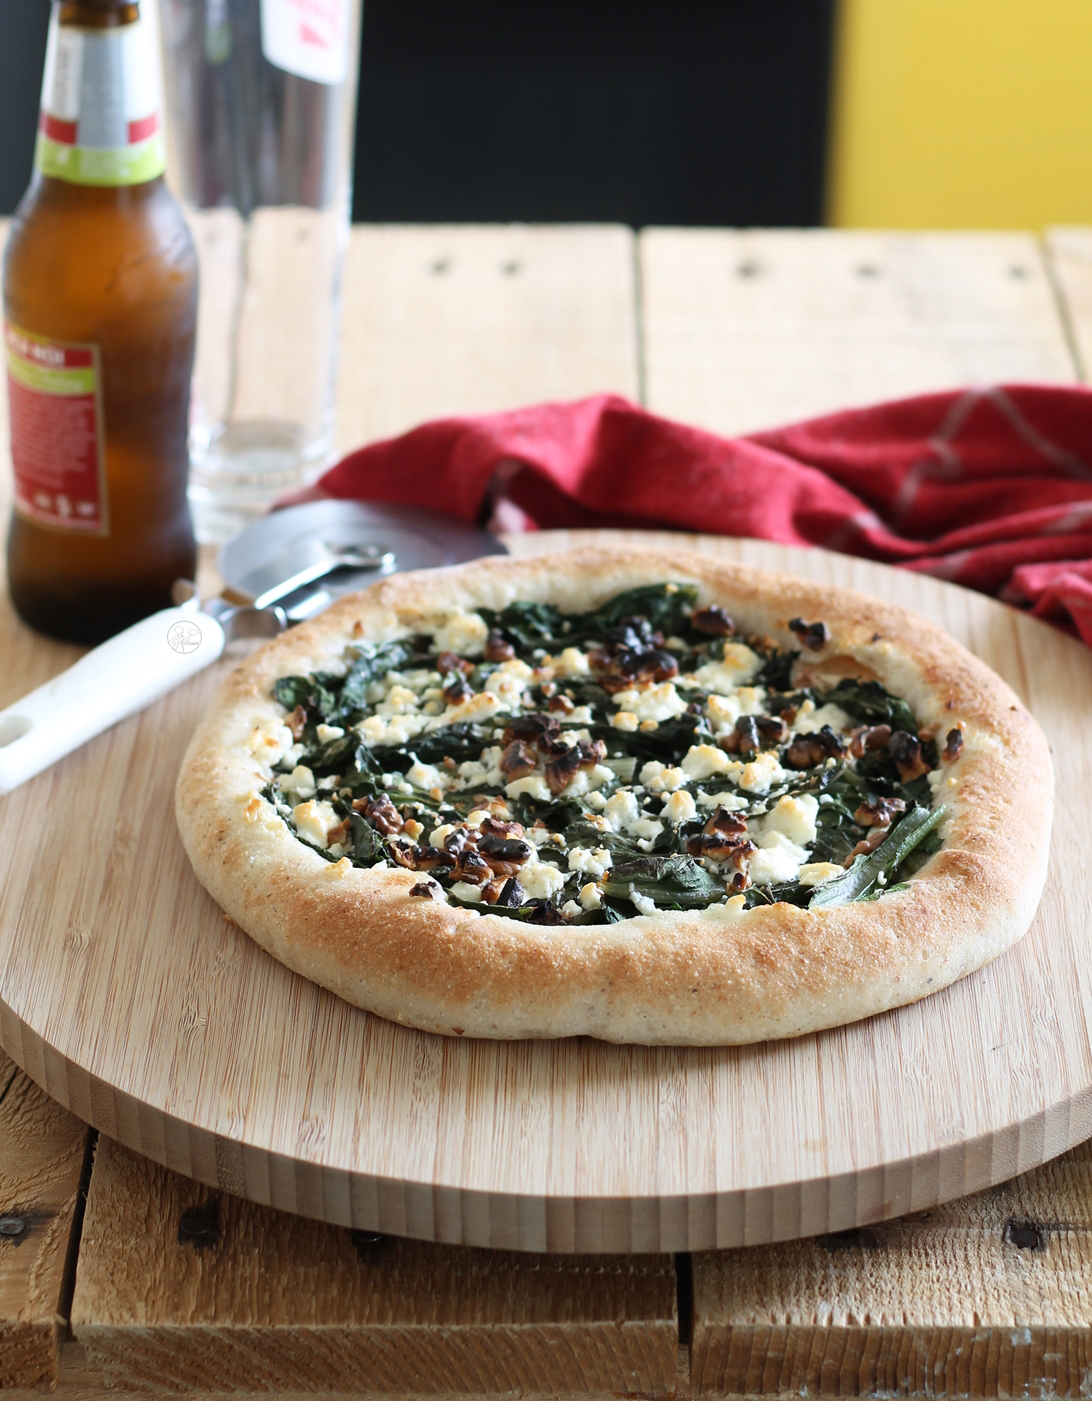 Pizza senza glutine con bordi ripieni, la video ricetta - La Cassata Celiaca